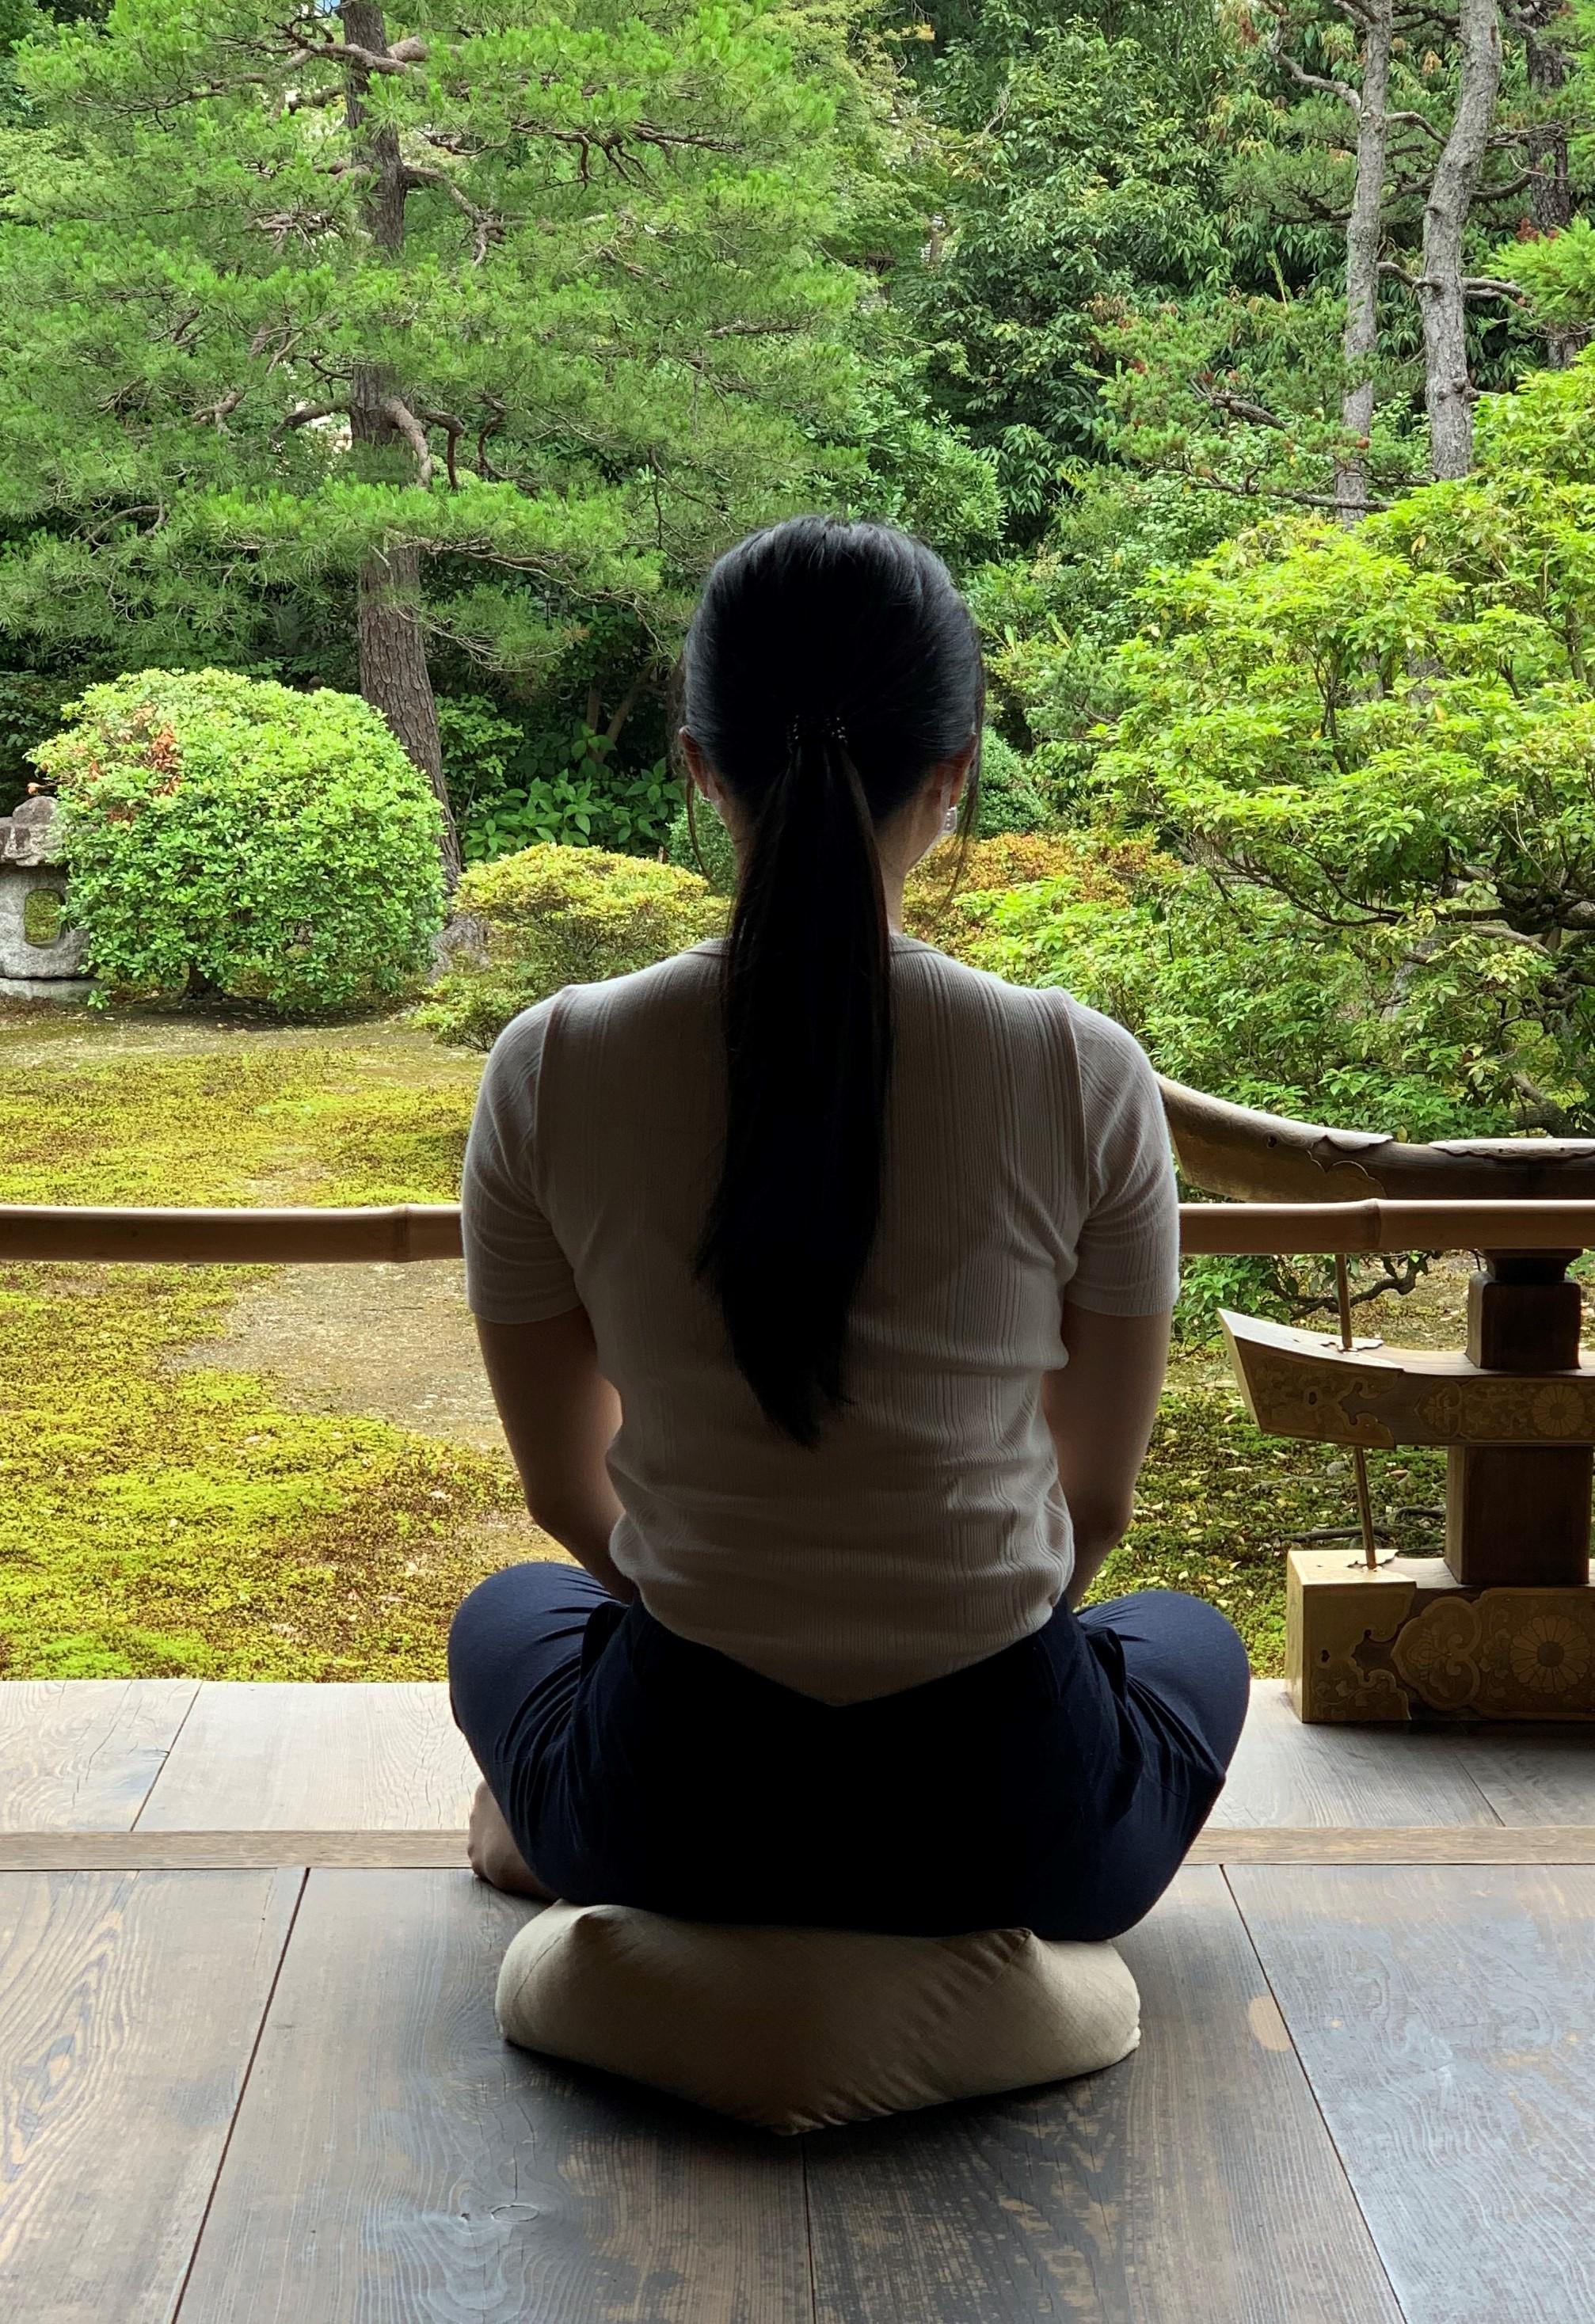 Dieses Meditationskissen, das einem Ojami-Kinderspielzeug aus Japan nachempfunden ist, macht schon beim ersten Hinsetzen Freude. Die dichte Kissenfüllung stützt die Basis der Wirbelsäule während der Meditation und lässt die eigenen energetischen